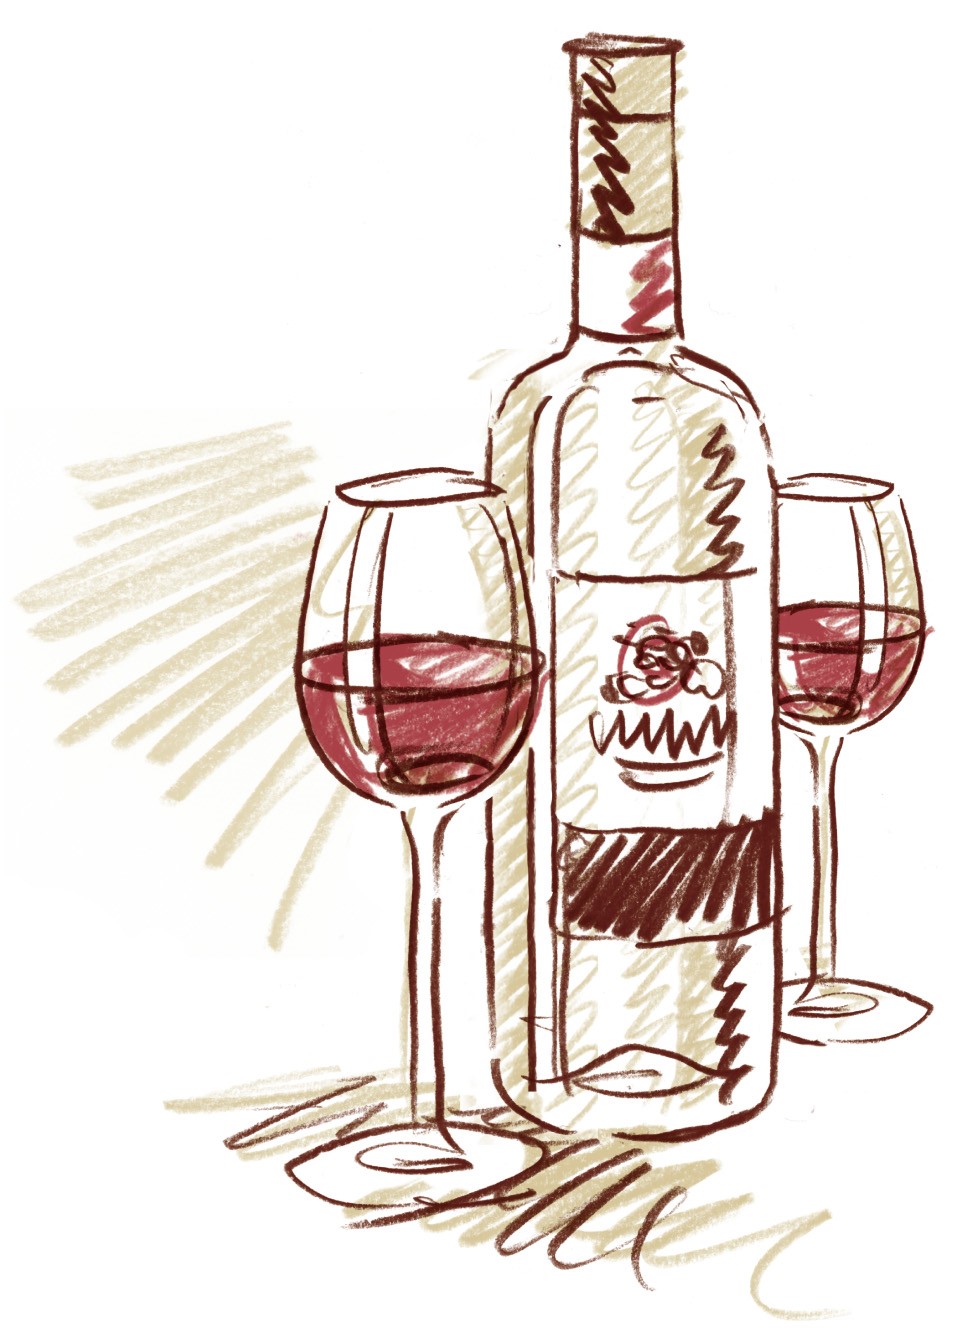 Zeichnung einer Weinflasche mit befüllten Gläsern